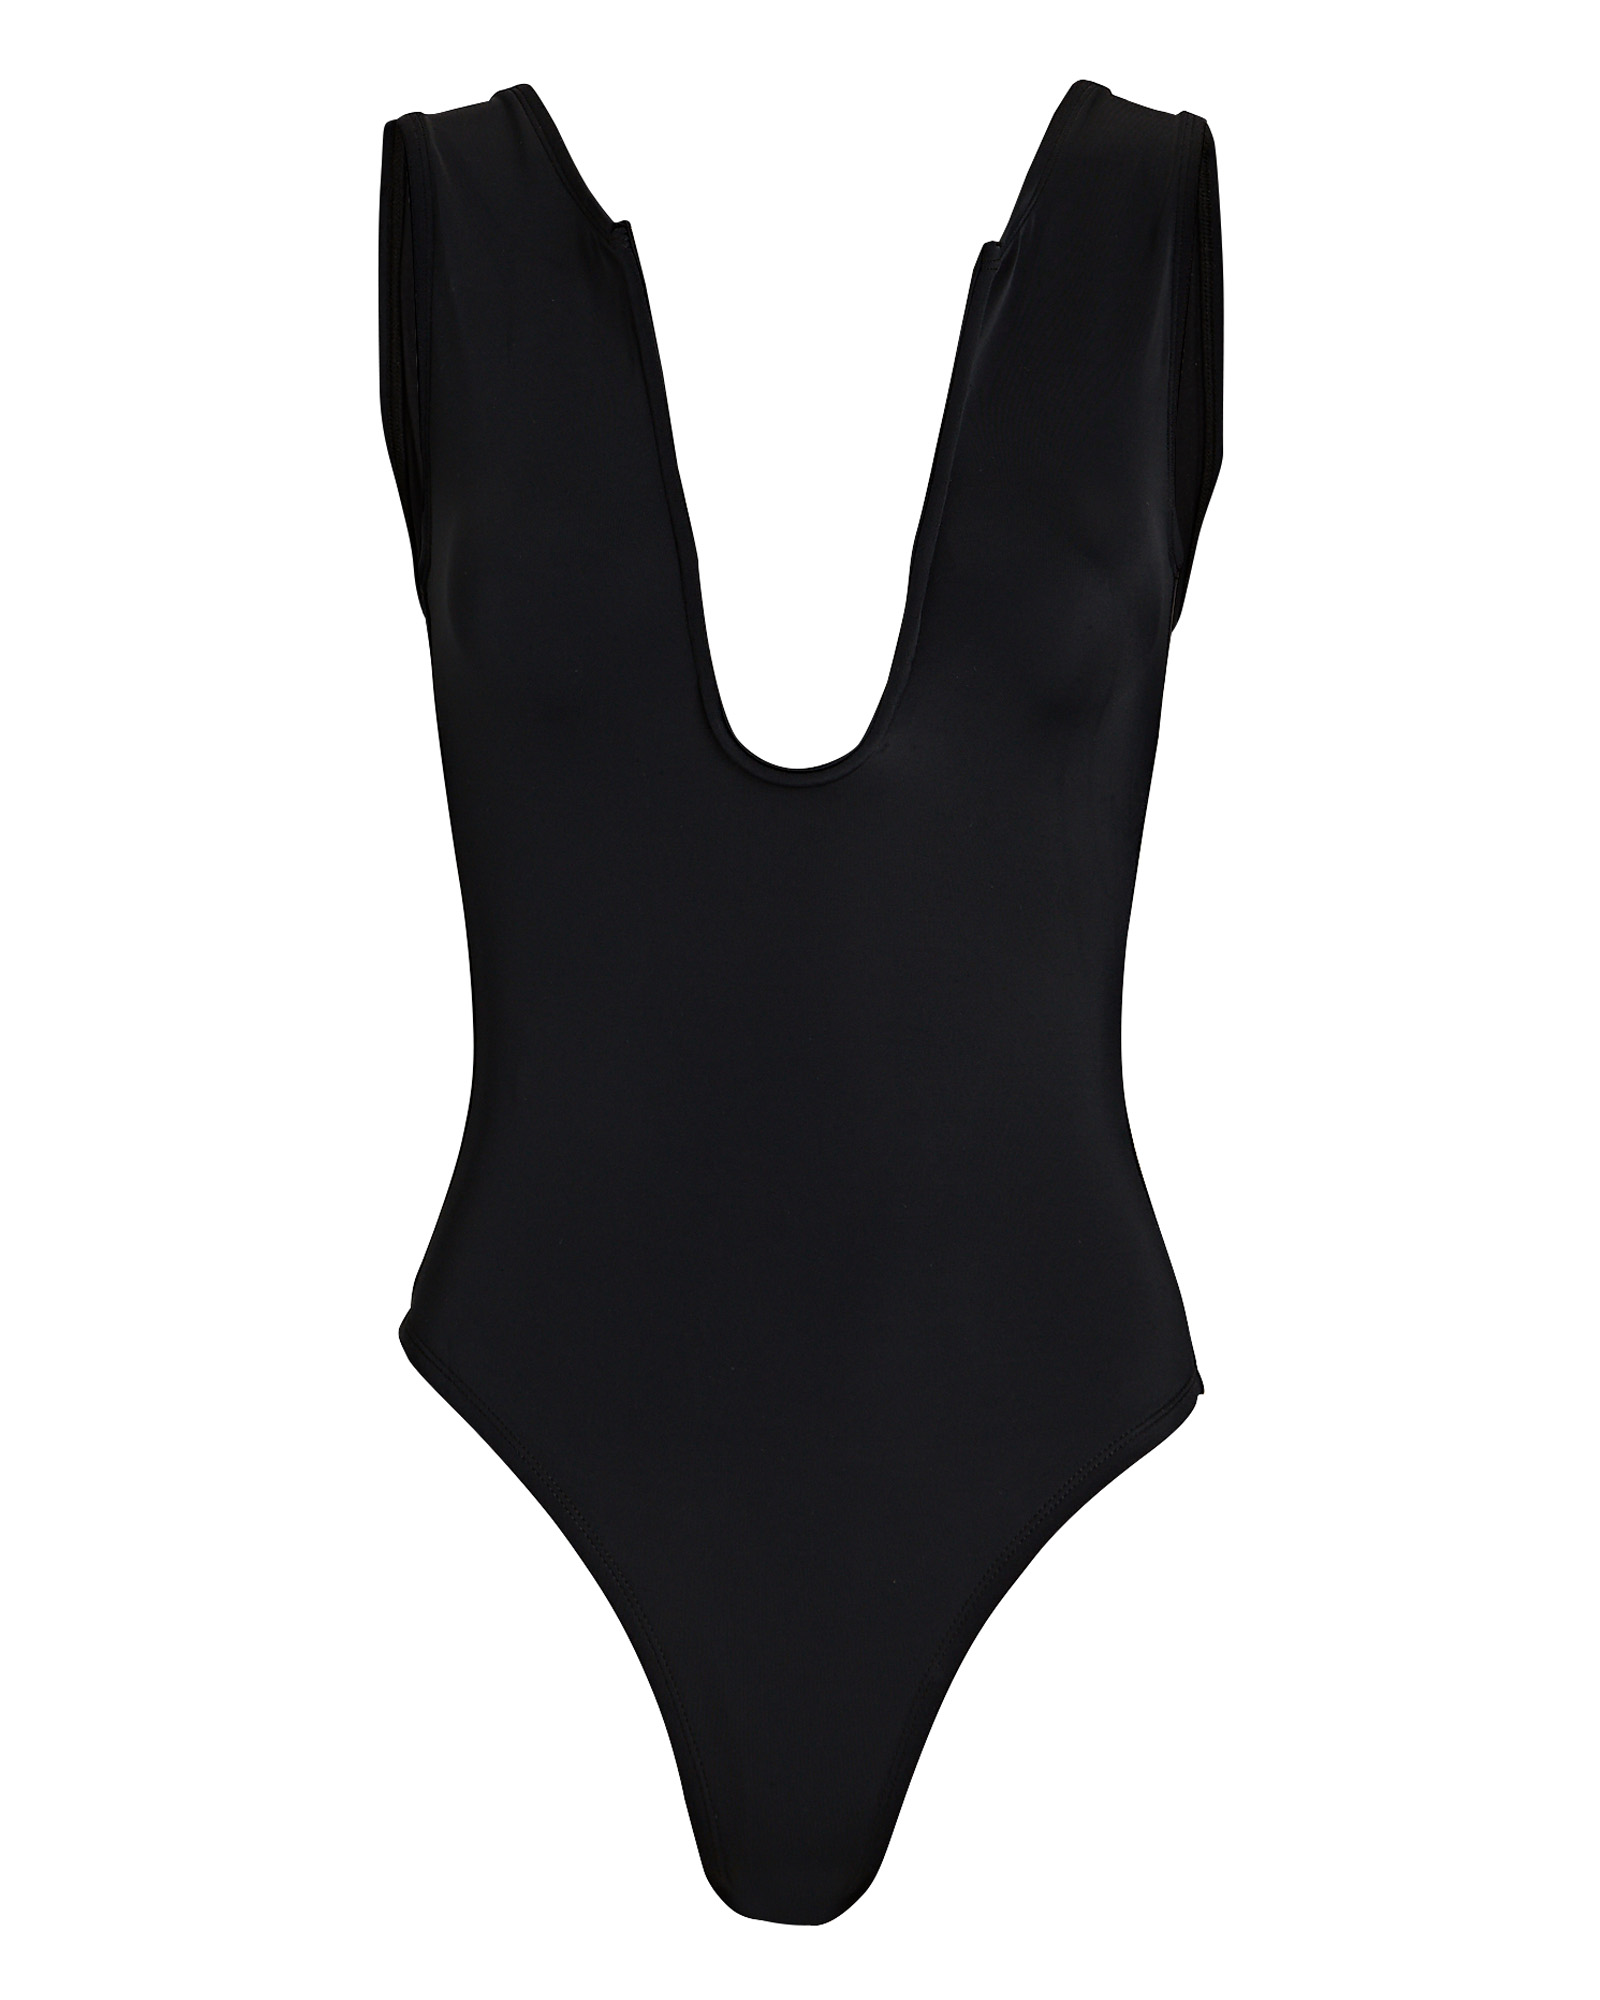 Oye Swimwear Rebecca One-Piece Swimsuit | INTERMIX®